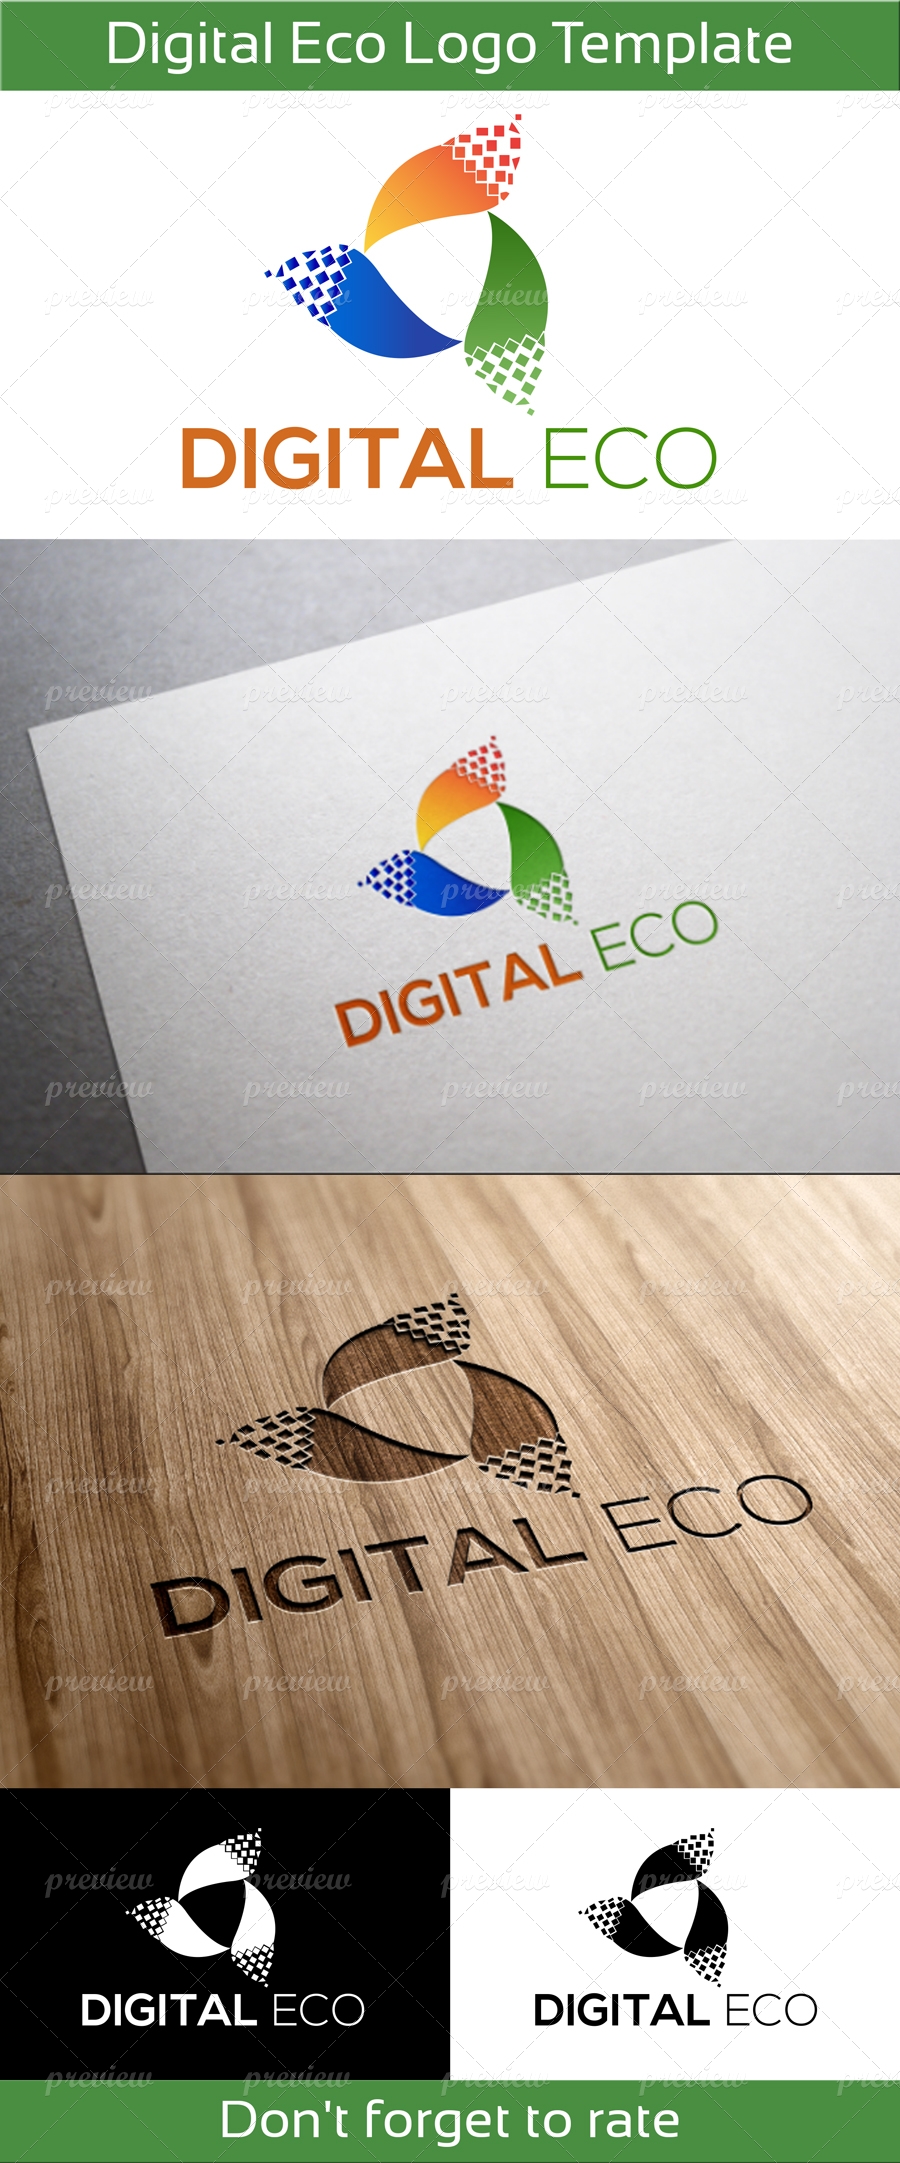 Digital Eco Logo